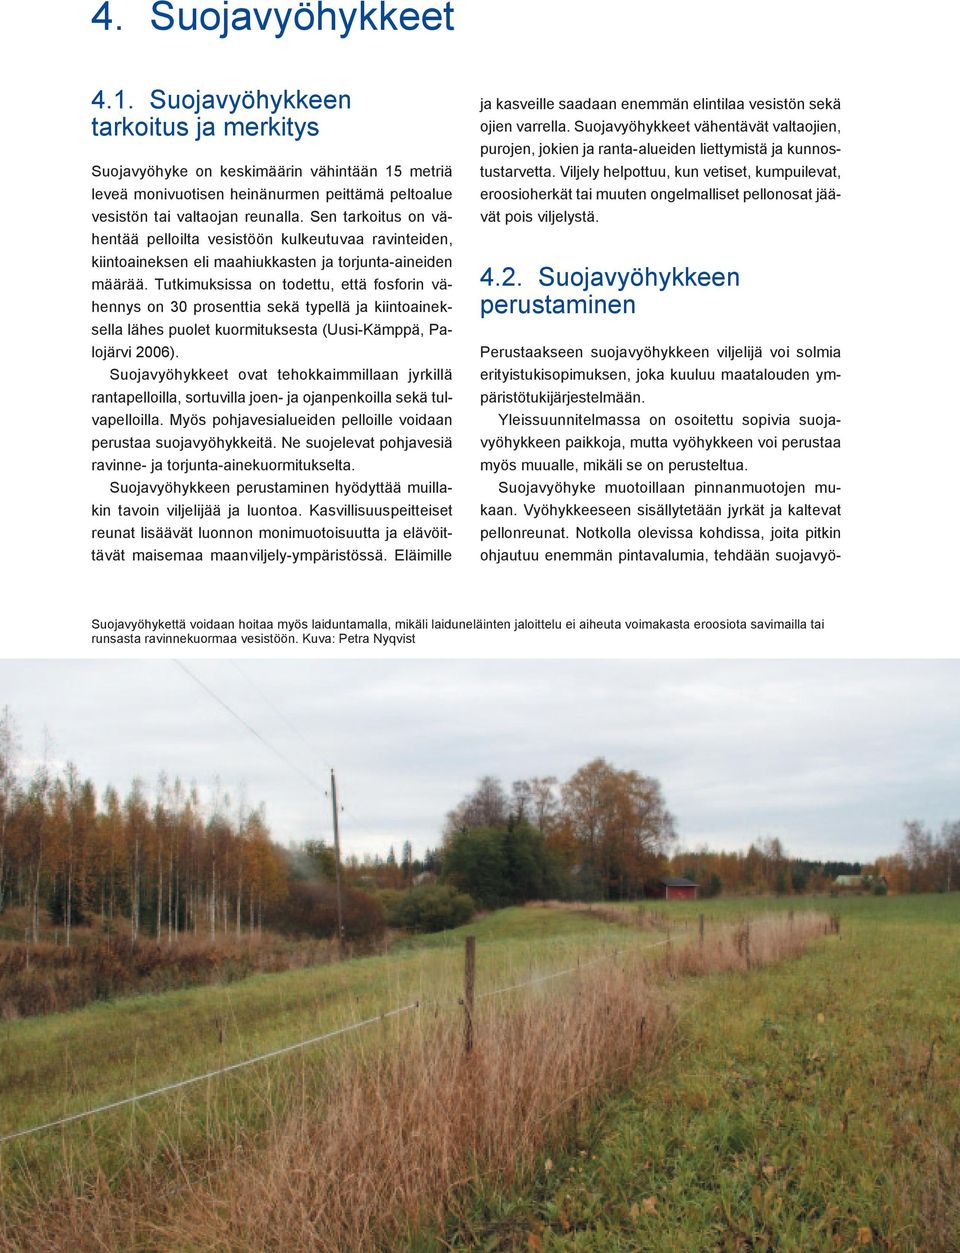 Tutkimuksissa on todettu, että fosforin vähennys on 30 prosenttia sekä typellä ja kiintoaineksella lähes puolet kuormituksesta (Uusi-Kämppä, Palojärvi 2006).